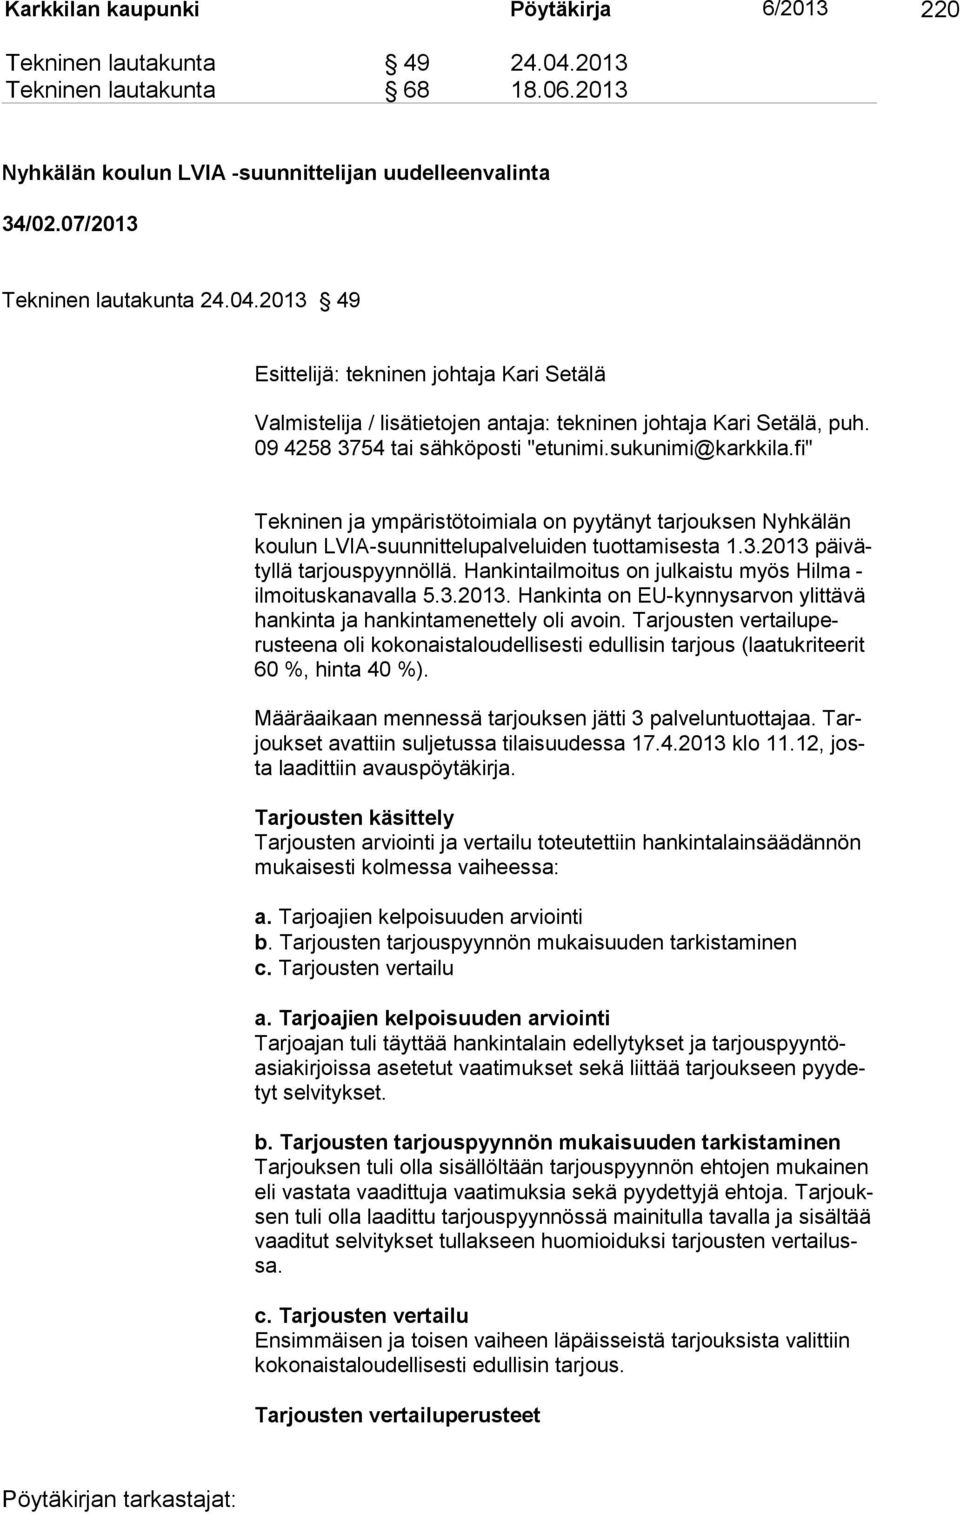 fi" Tekninen ja ympäristötoimiala on pyytänyt tarjouksen Nyhkälän koulun LVIA-suunnittelupalveluiden tuottami sesta 1.3.2013 päi vätyllä tarjouspyynnöllä.